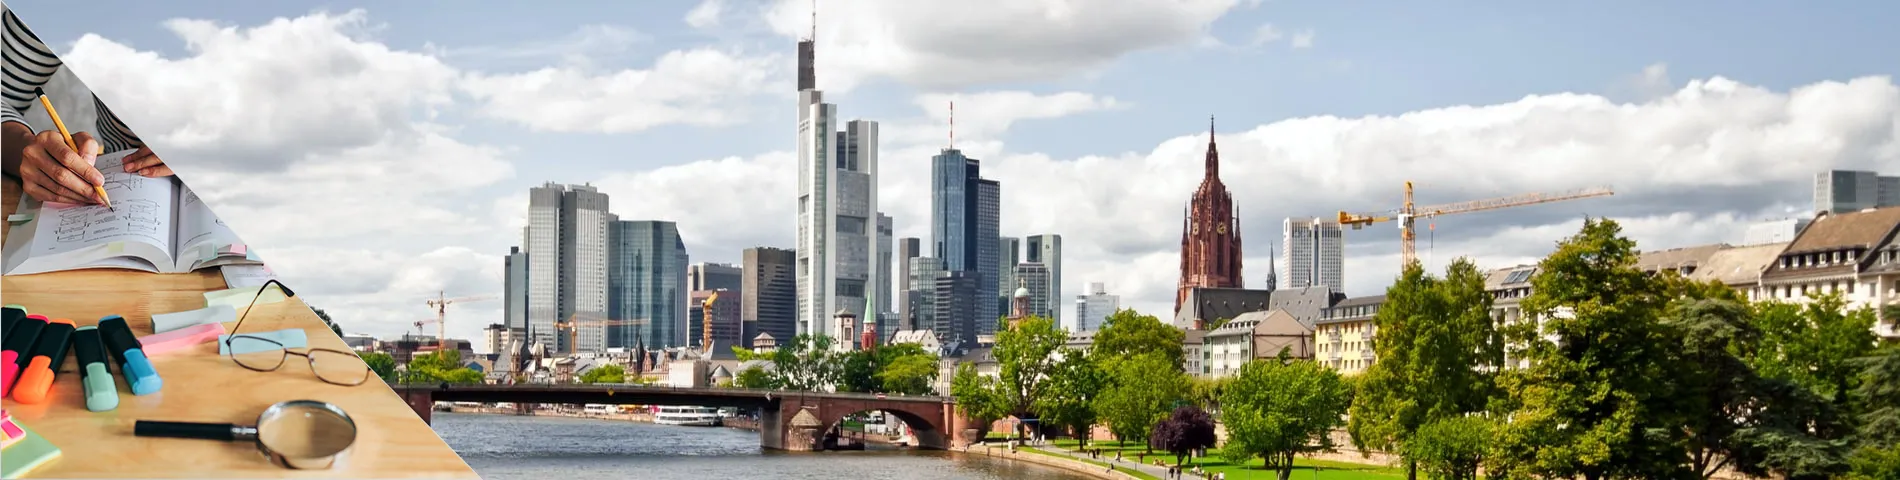 Frankfurt - Przygotowanie Akademickie / Pathway